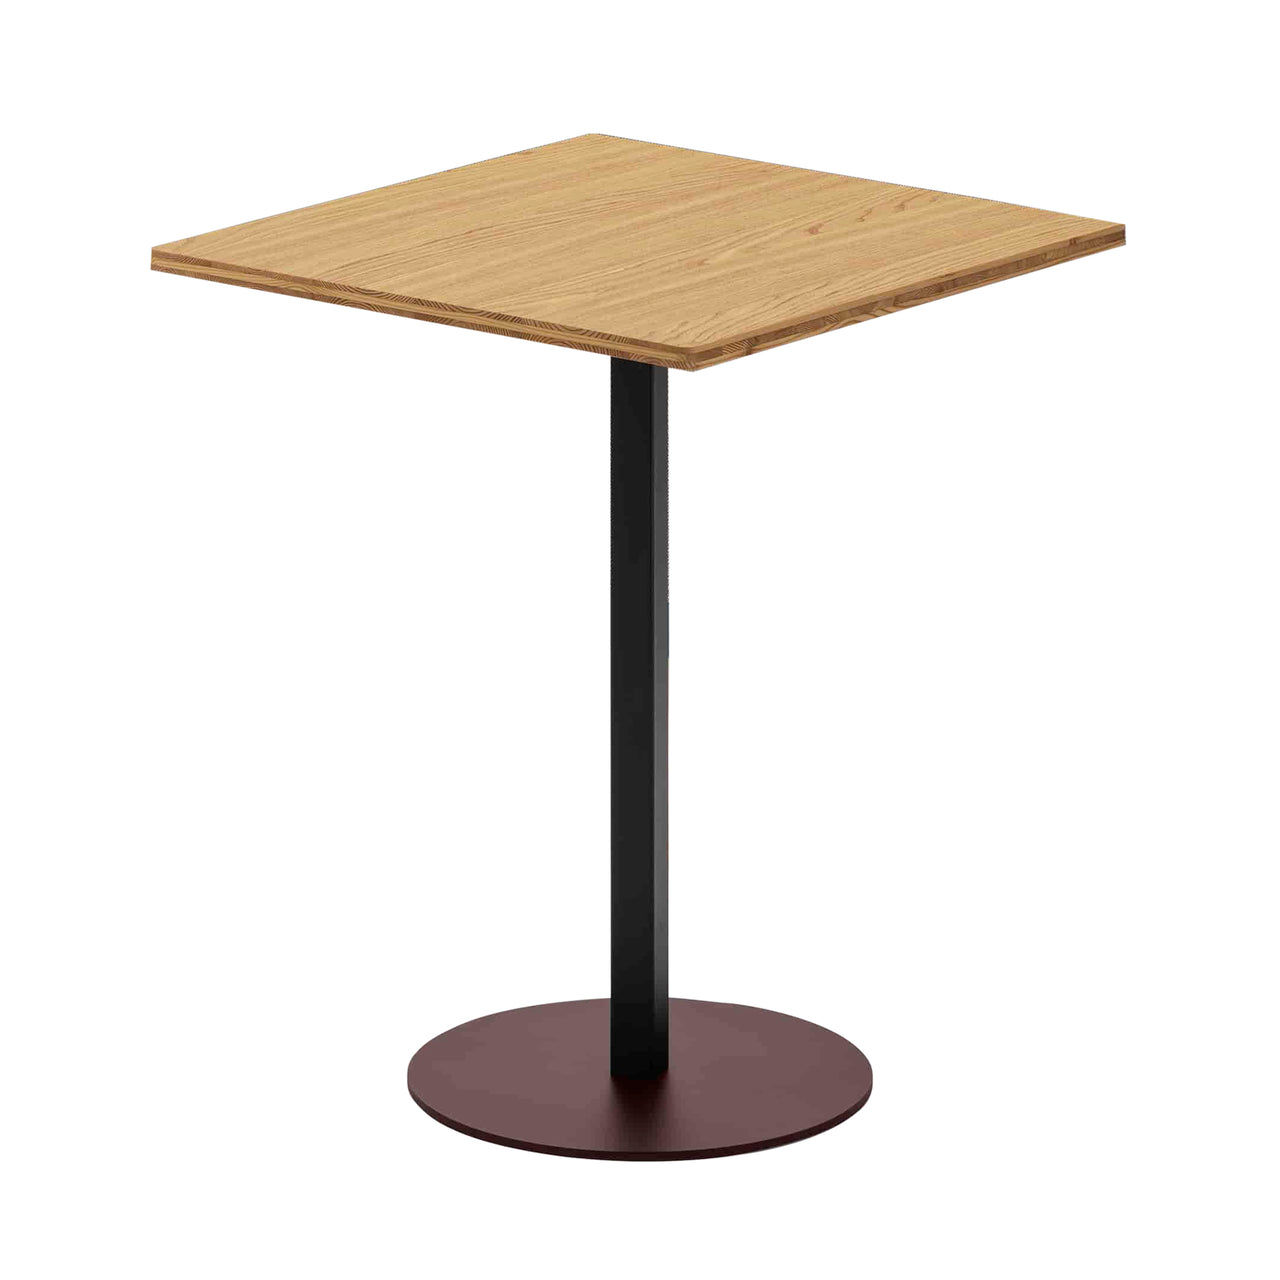 Grid Café Table: Larch Veneer + Square